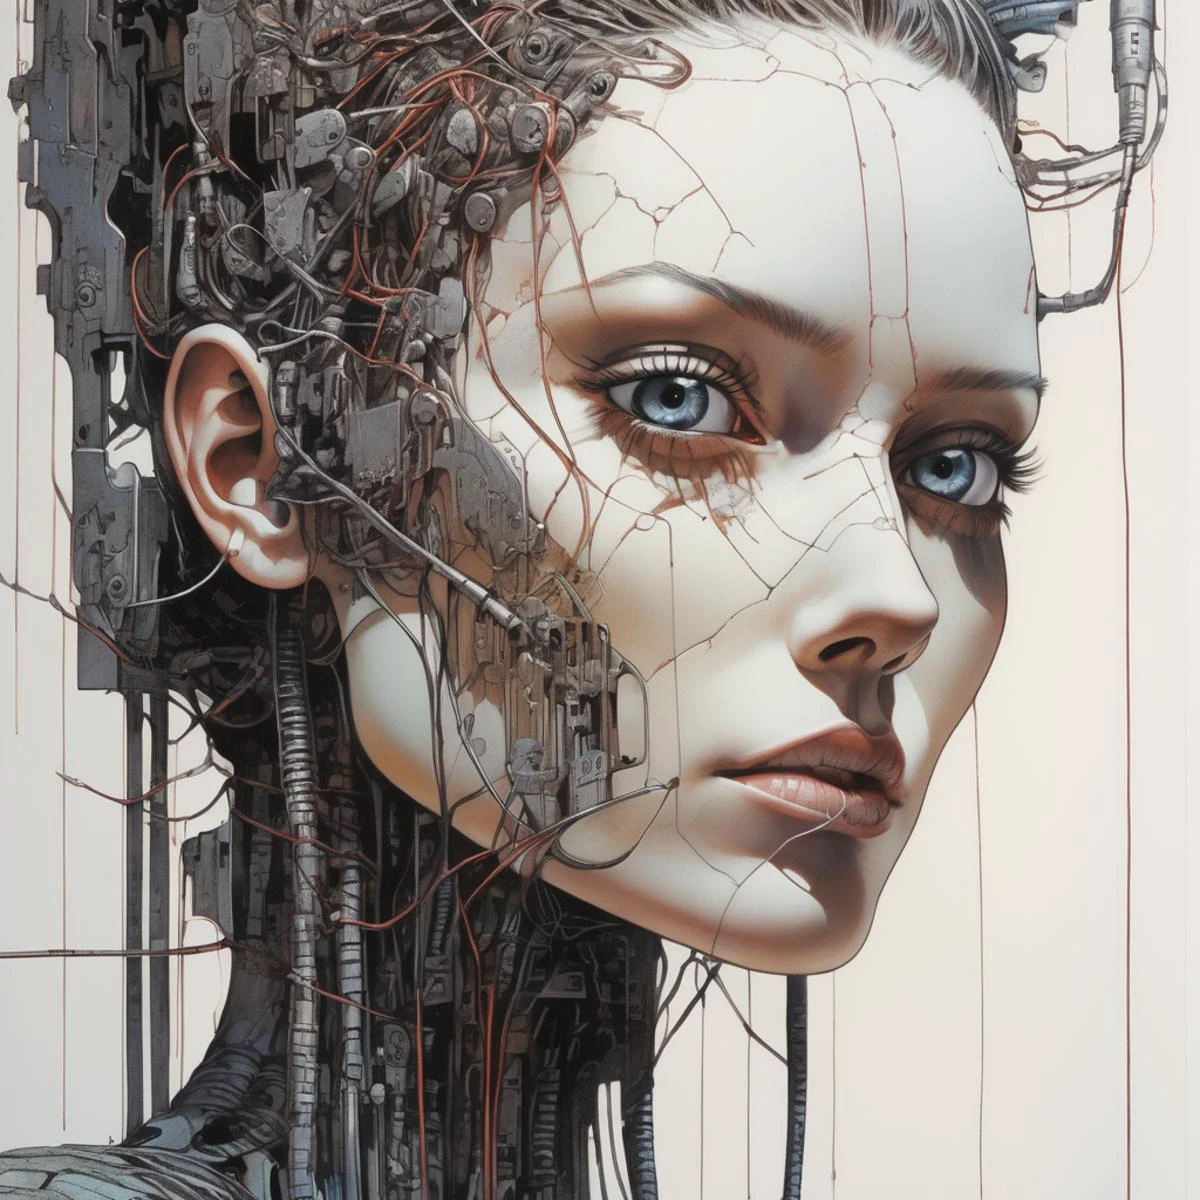 ((布蘭卡·瓦雷拉,  紀念碑谷 ) 風格) ,身分證掃描件 , 阿尔蒂基耶罗, 詳細的產品照片, cyberpunk Todd Mcfarlane comic book art an impressive close-up of the face of a 瘦骨嶙峋的 cyberpunk electronics, 电线, 吸引觀眾的女人. 她蒼白的, 瓷器般的肌膚看起來近乎超自然, 而她的黑眼睛散發著深度和洞察力. 光與影的相互作用凸顯了她臉部的精緻細節, 凸顯她的鮮明特色. 這個特寫鏡頭捕捉到了完整的面部表情的強度和迷人, 瘦骨嶙峋的, coloured acrylic inks cyberpunk 風格 ,,  环境照明, 光學藝術,  作者：雅庫布‧羅札爾斯基, 模拟, 通過卡蒂·霍納,  作者：菲利普‧德魯耶,  啟發漫畫藝術, 英雄奇幻, 顏色和紋理的對比應該非常清晰,超現實主義,